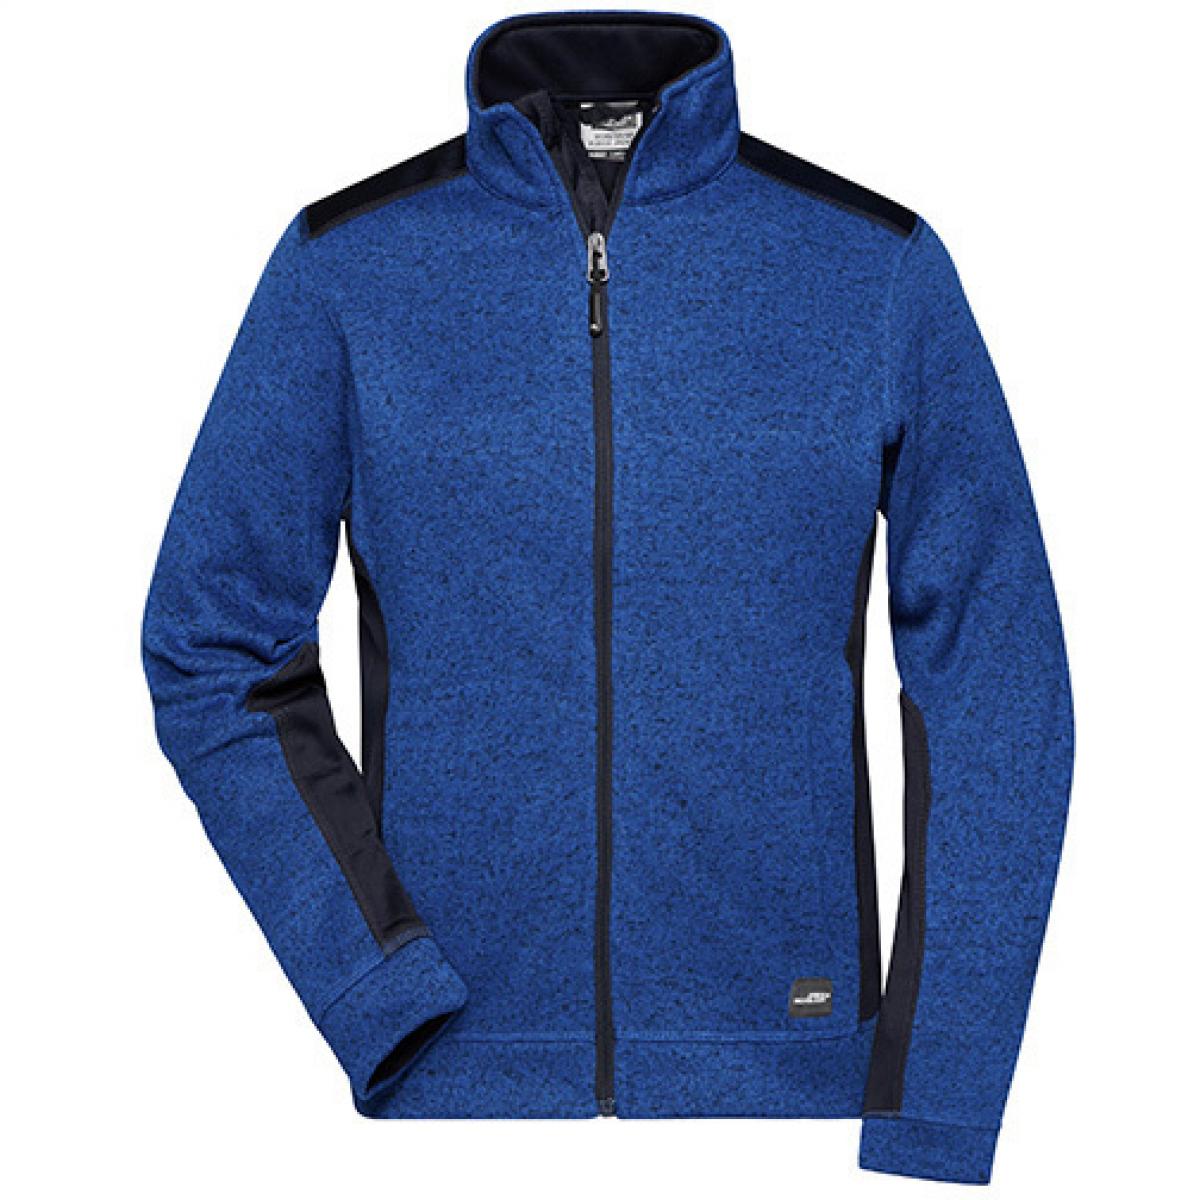 Hersteller: James+Nicholson Herstellernummer: JN861 Artikelbezeichnung: Damen Jacke, Ladies‘ Knitted Workwear Fleece Jacket -STRONG- Farbe: Royal Melange/Navy